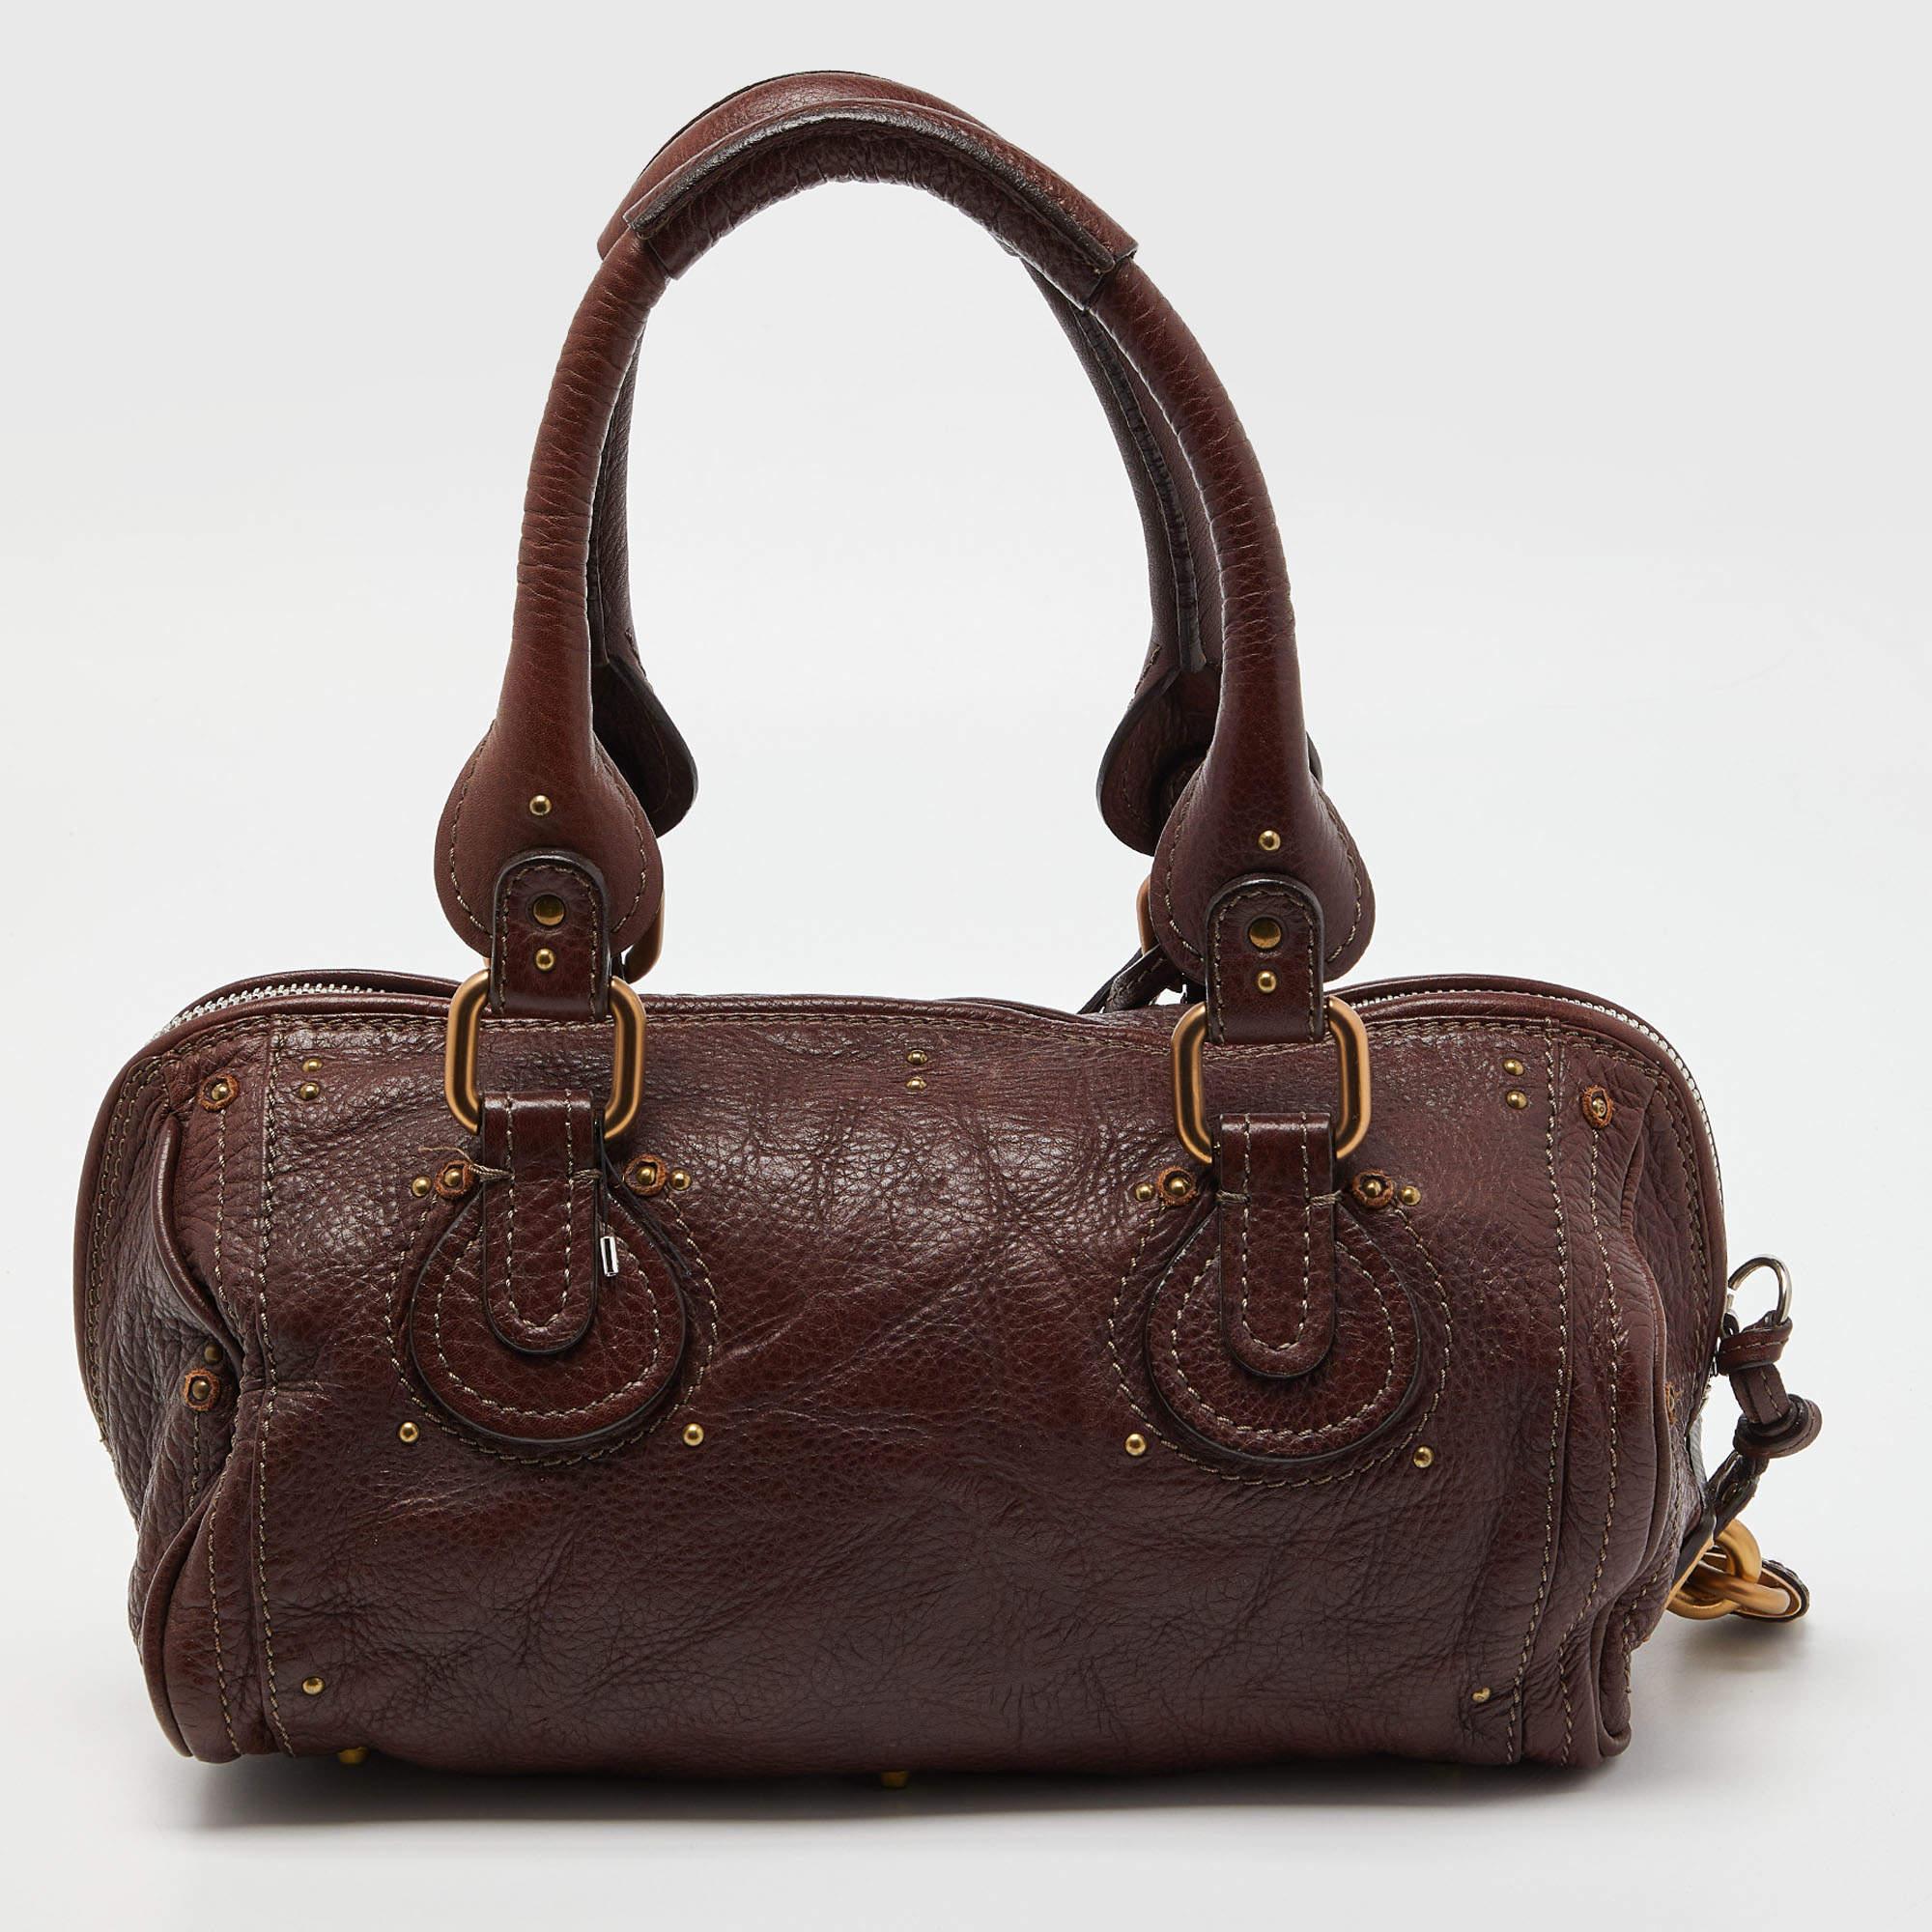 Die Paddington Tasche von Chole ist in der Tat glamourös und hat einen Retro-Look mit zweifarbigen Metallakzenten. Die aus bordeauxfarbenem Leder gefertigte Tasche ist sehr geräumig und bietet Platz für all Ihre wichtigen Dinge. Die Tasche hat zwei